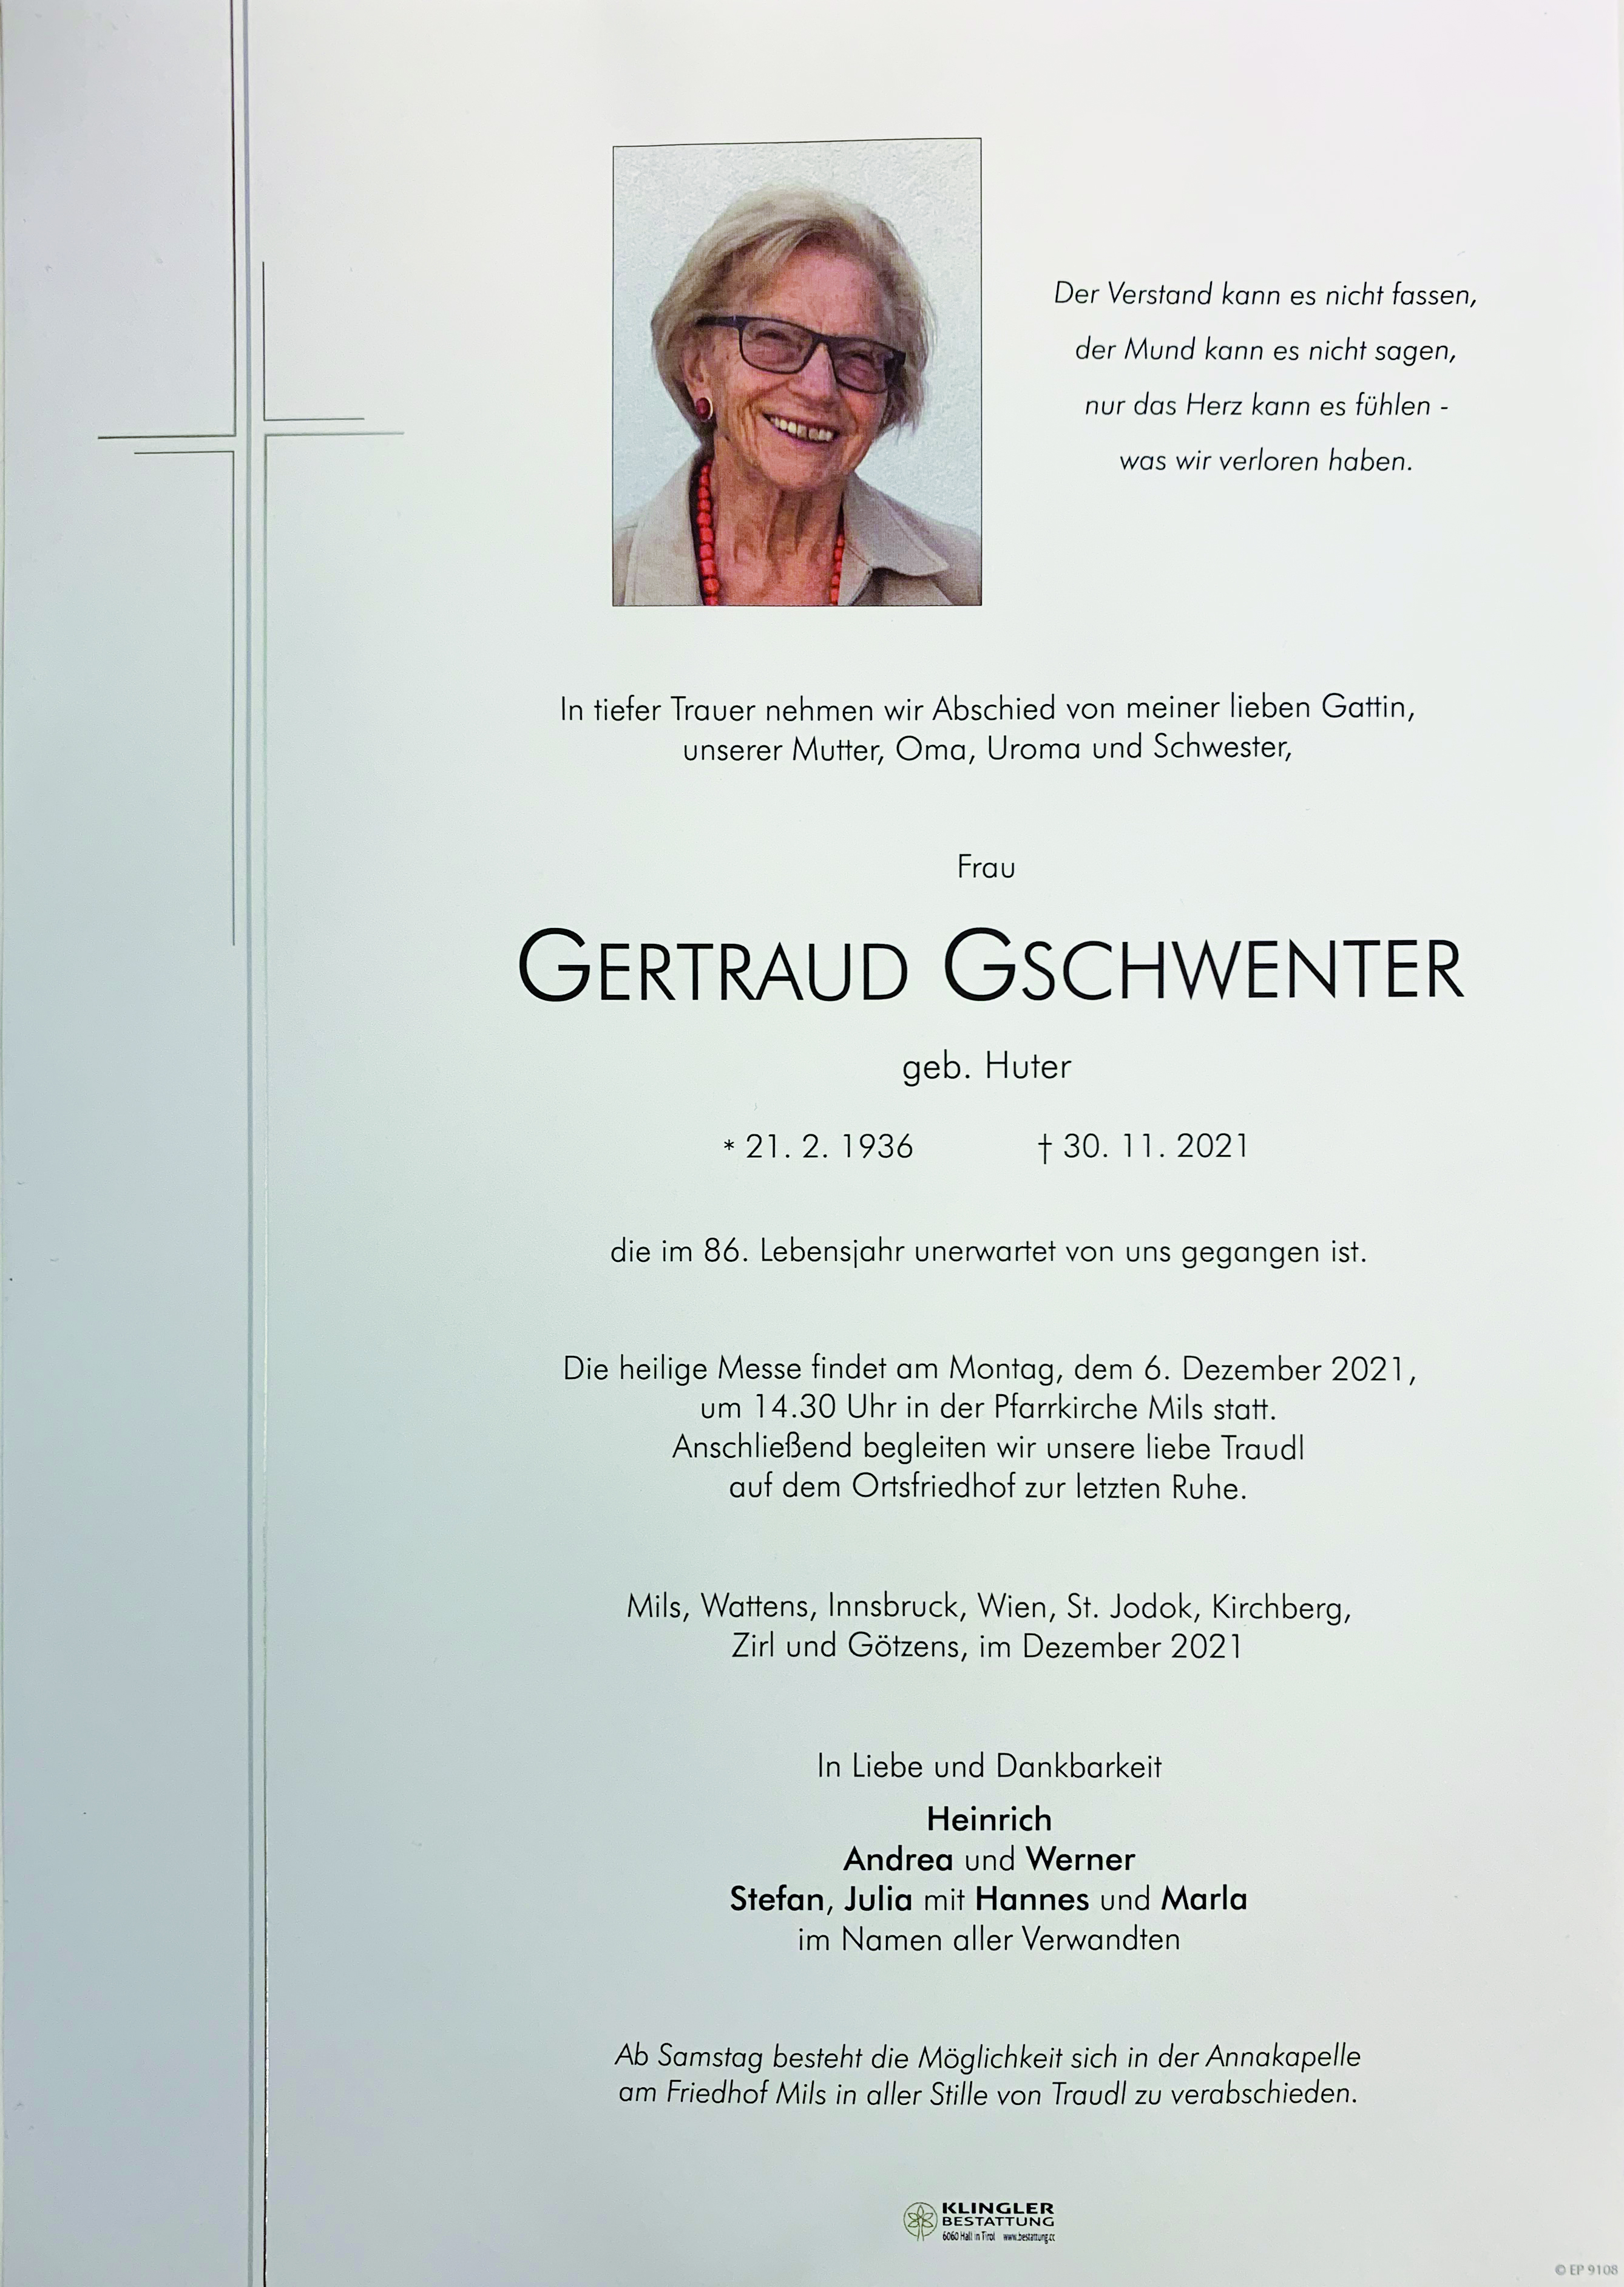 Gertraud Gschwenter